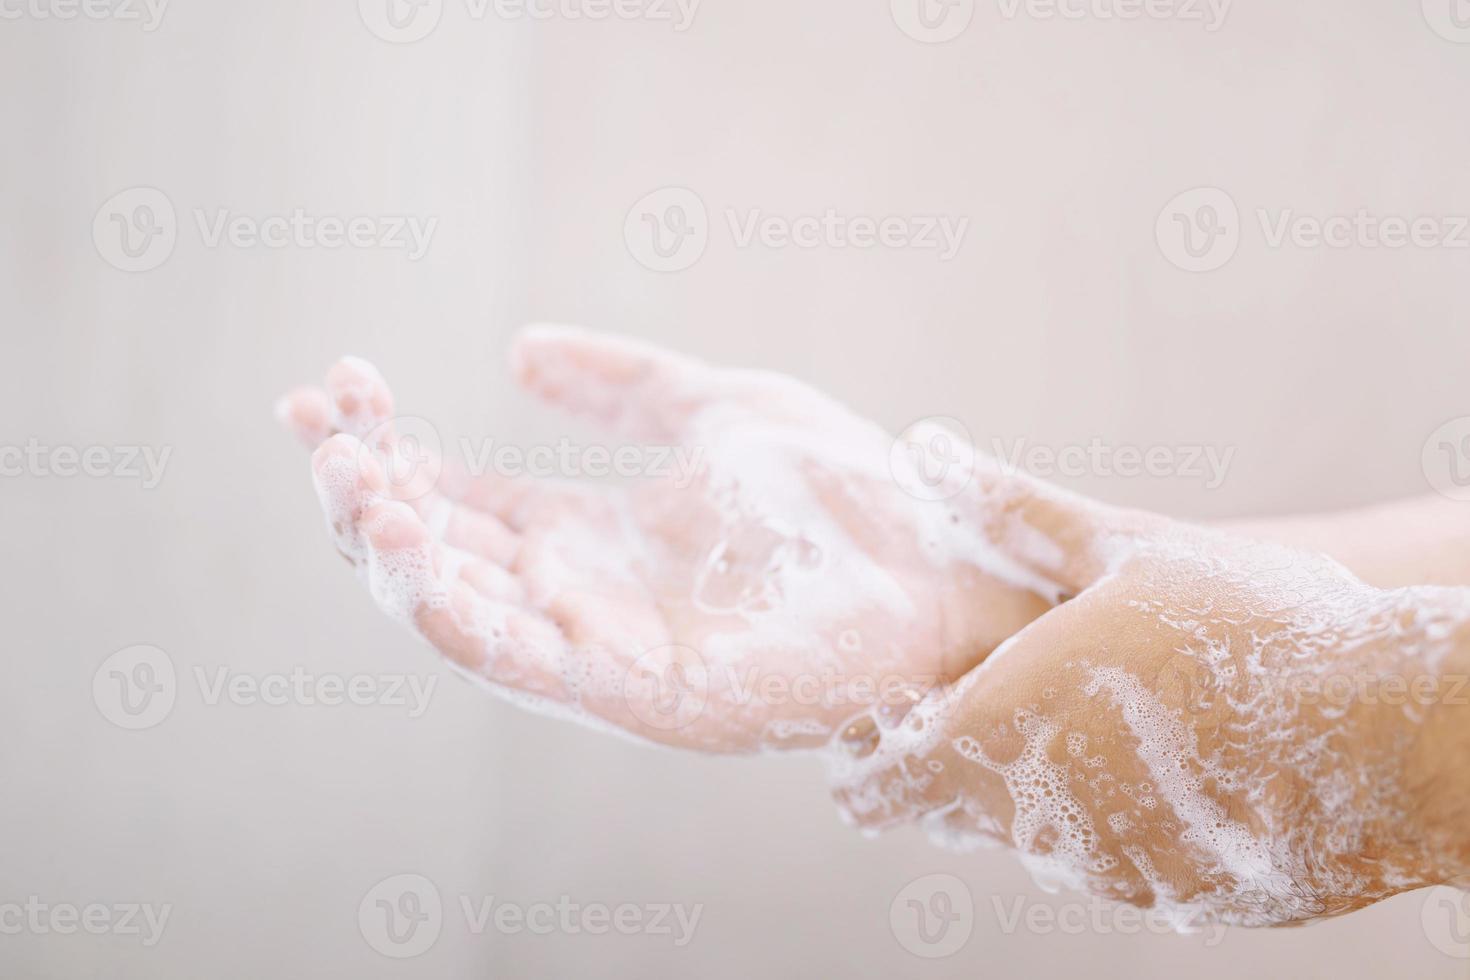 lavarsi le mani strofinando con sapone uomo per la prevenzione del virus corona, igiene per fermare la diffusione del coronavirus. foto